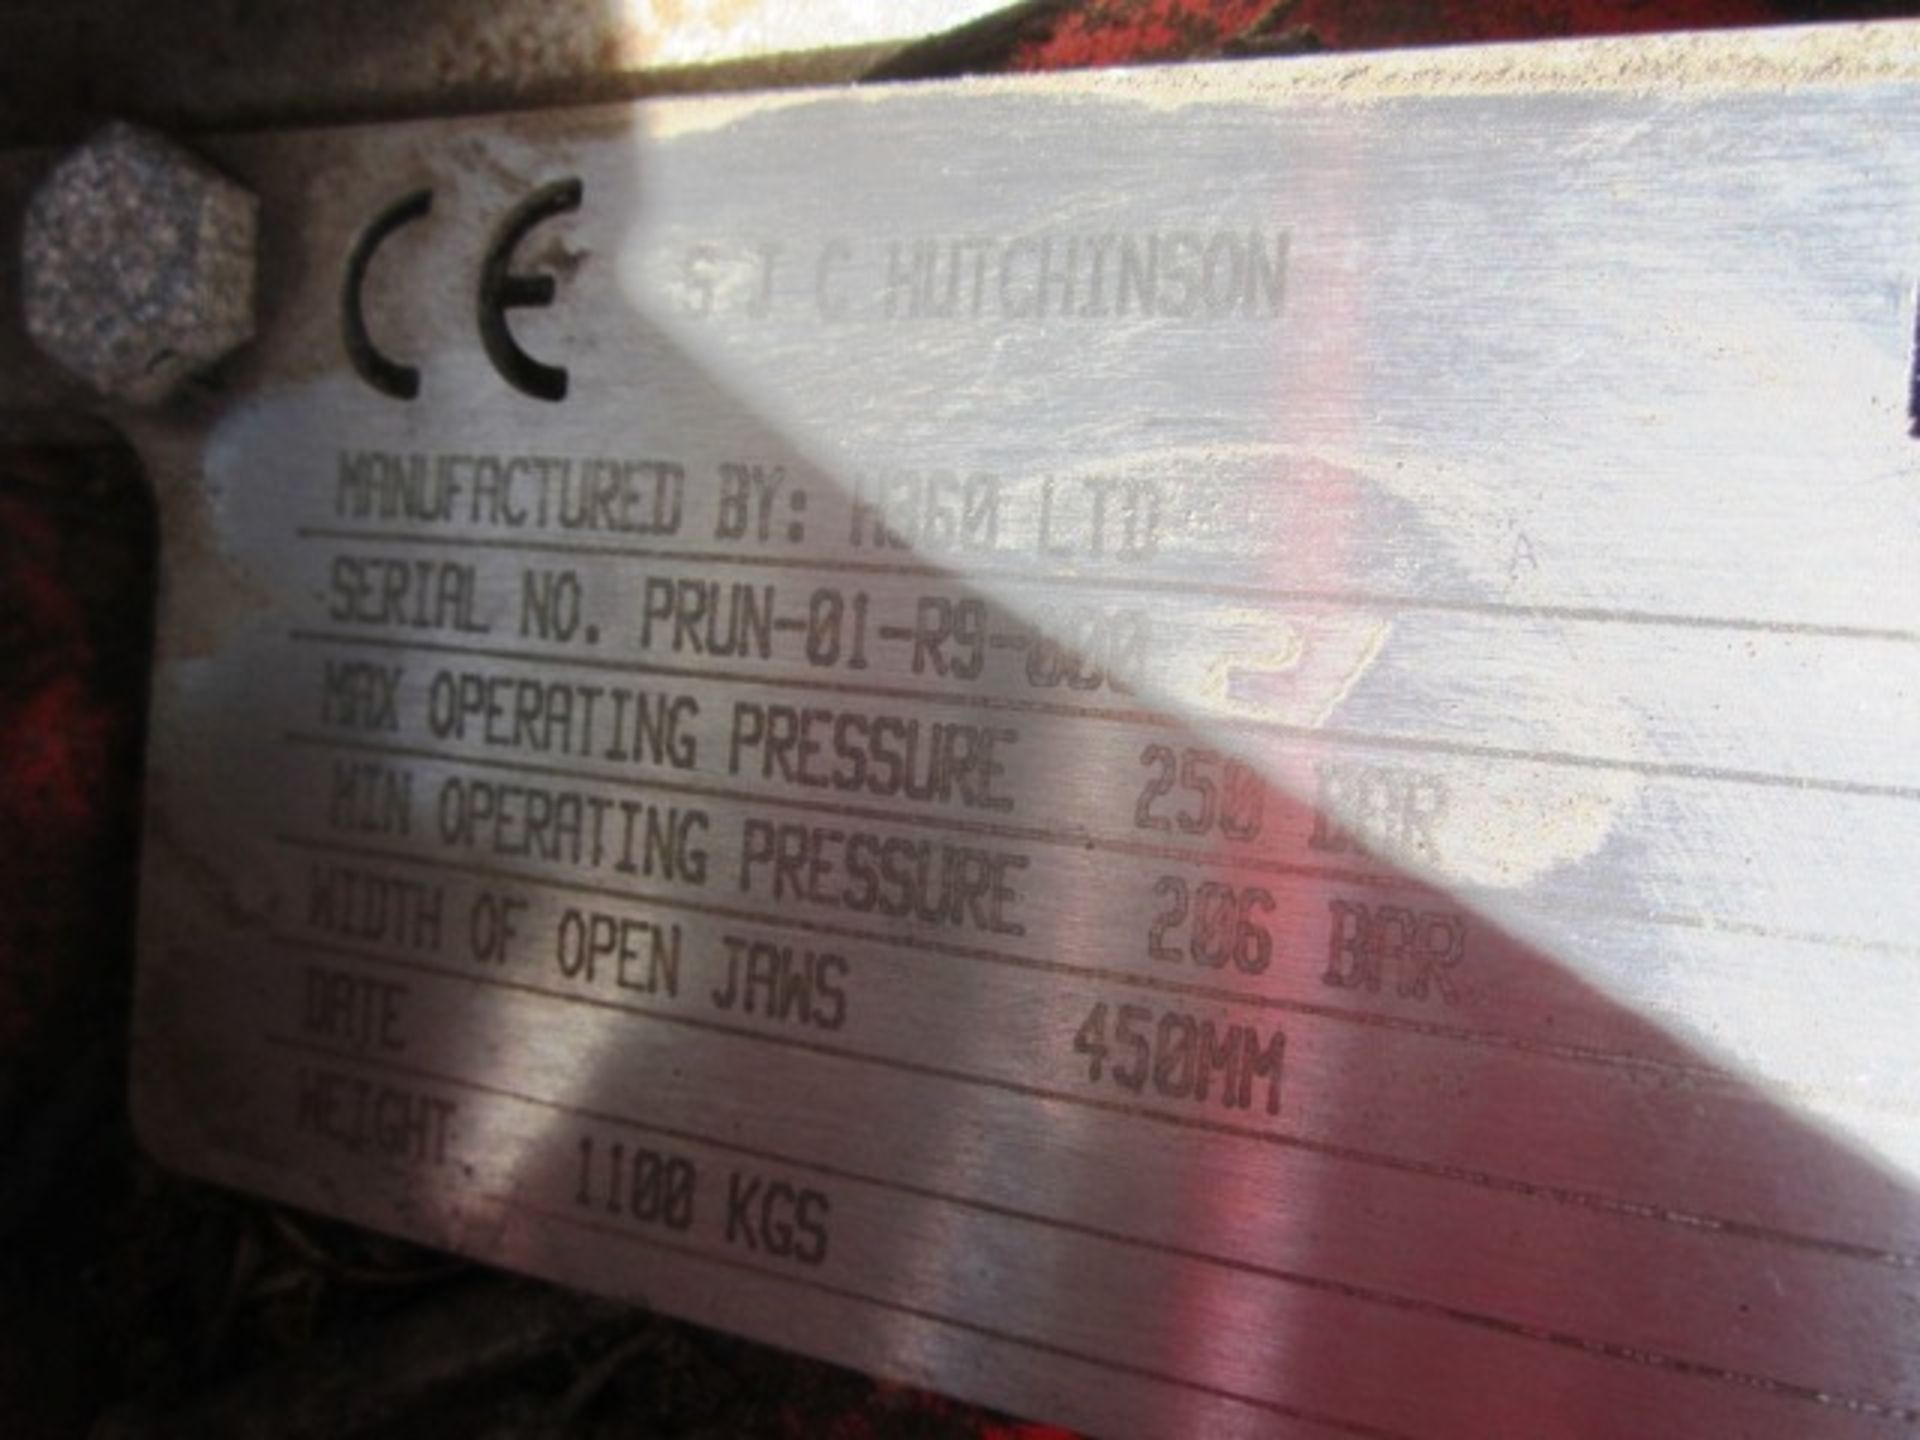 SJC Hutchinson shears, model H360, serial number PRUN-01-R9-00027, operating pressure max 250 bar, - Image 6 of 7